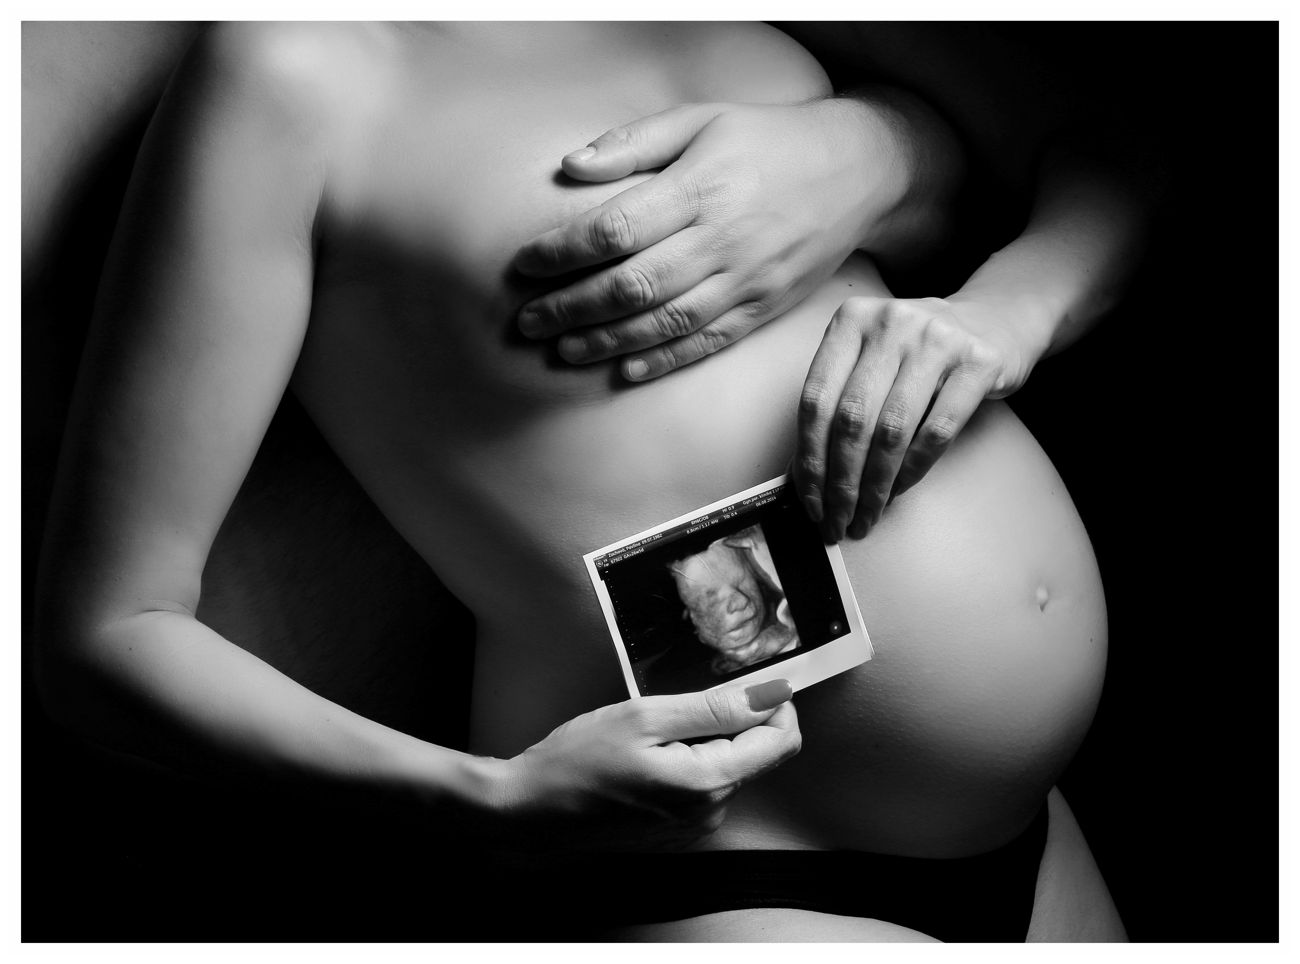 Focení v těhotenství - bříško s ultrazvukem